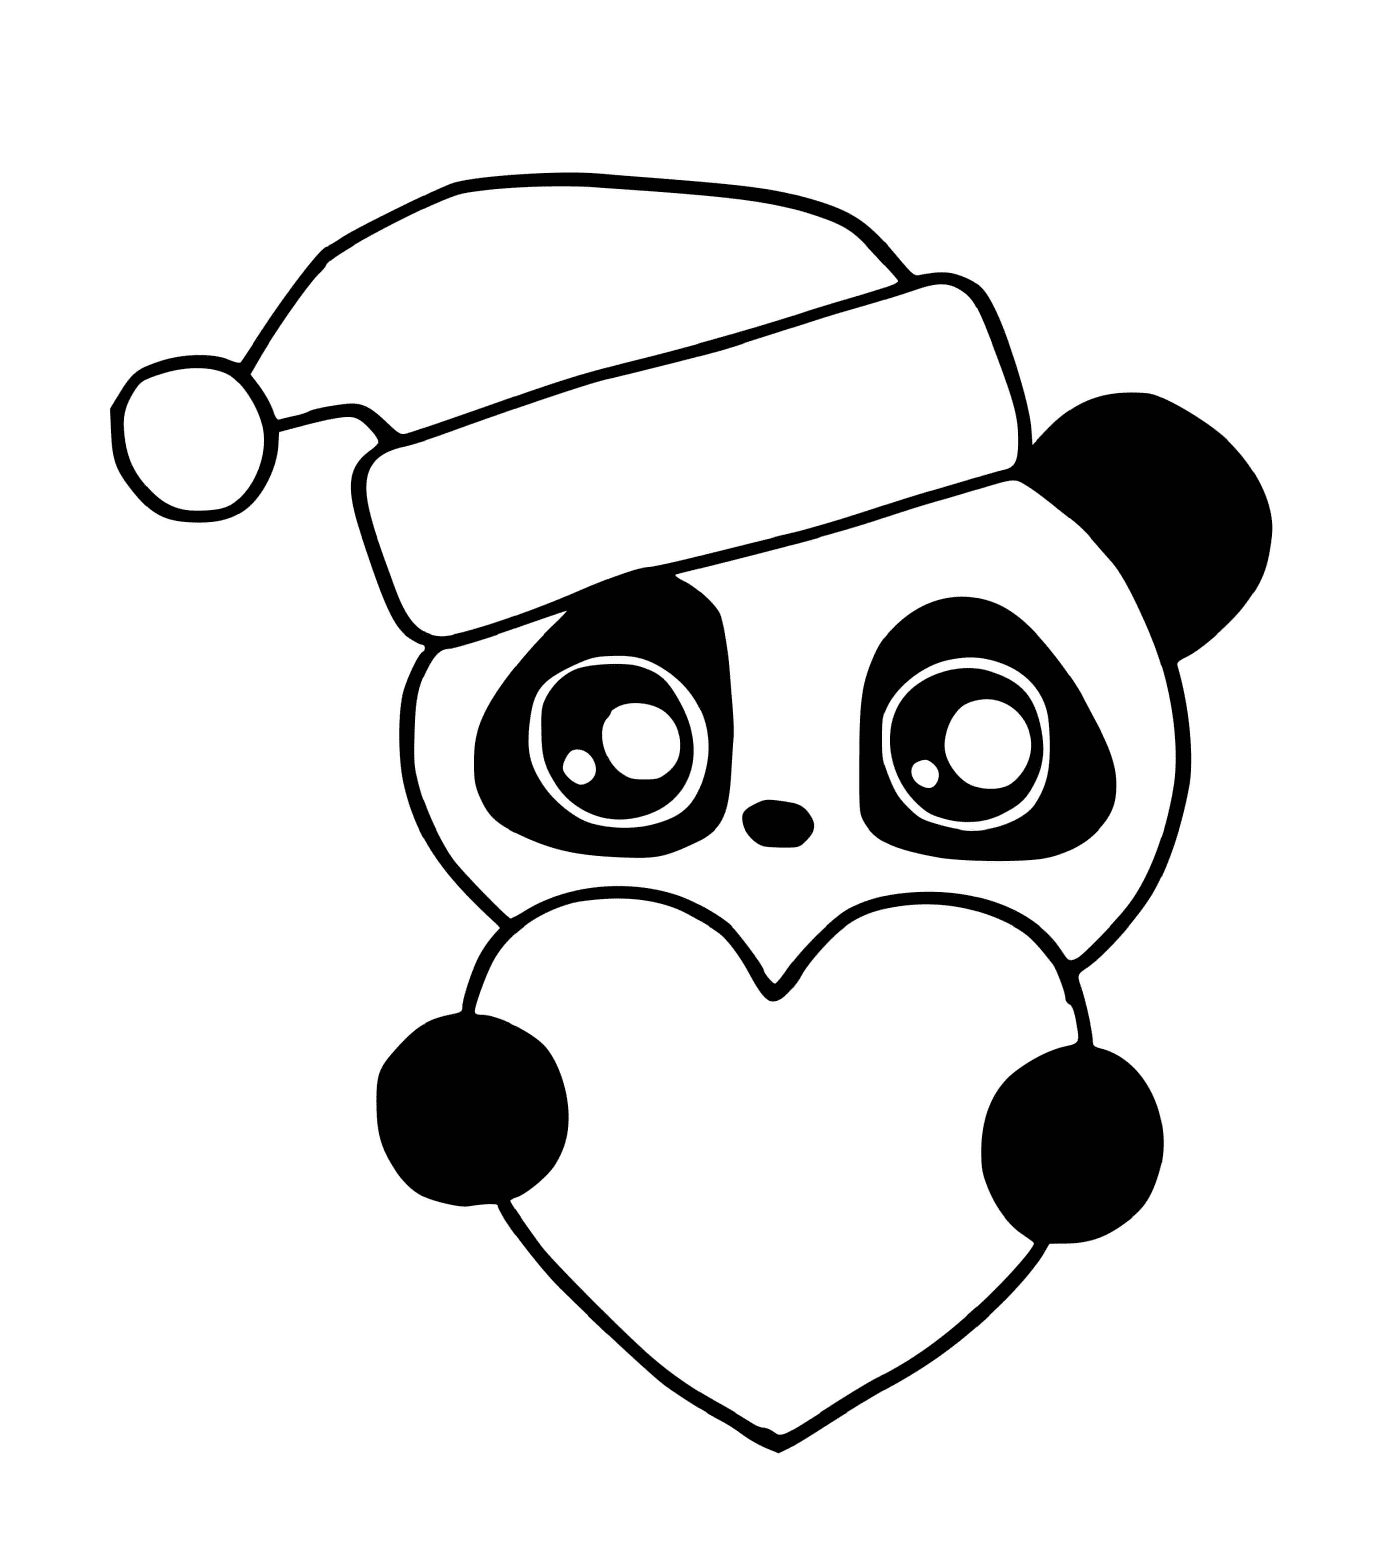  टोपी सहित पांडा क्रिसमस 